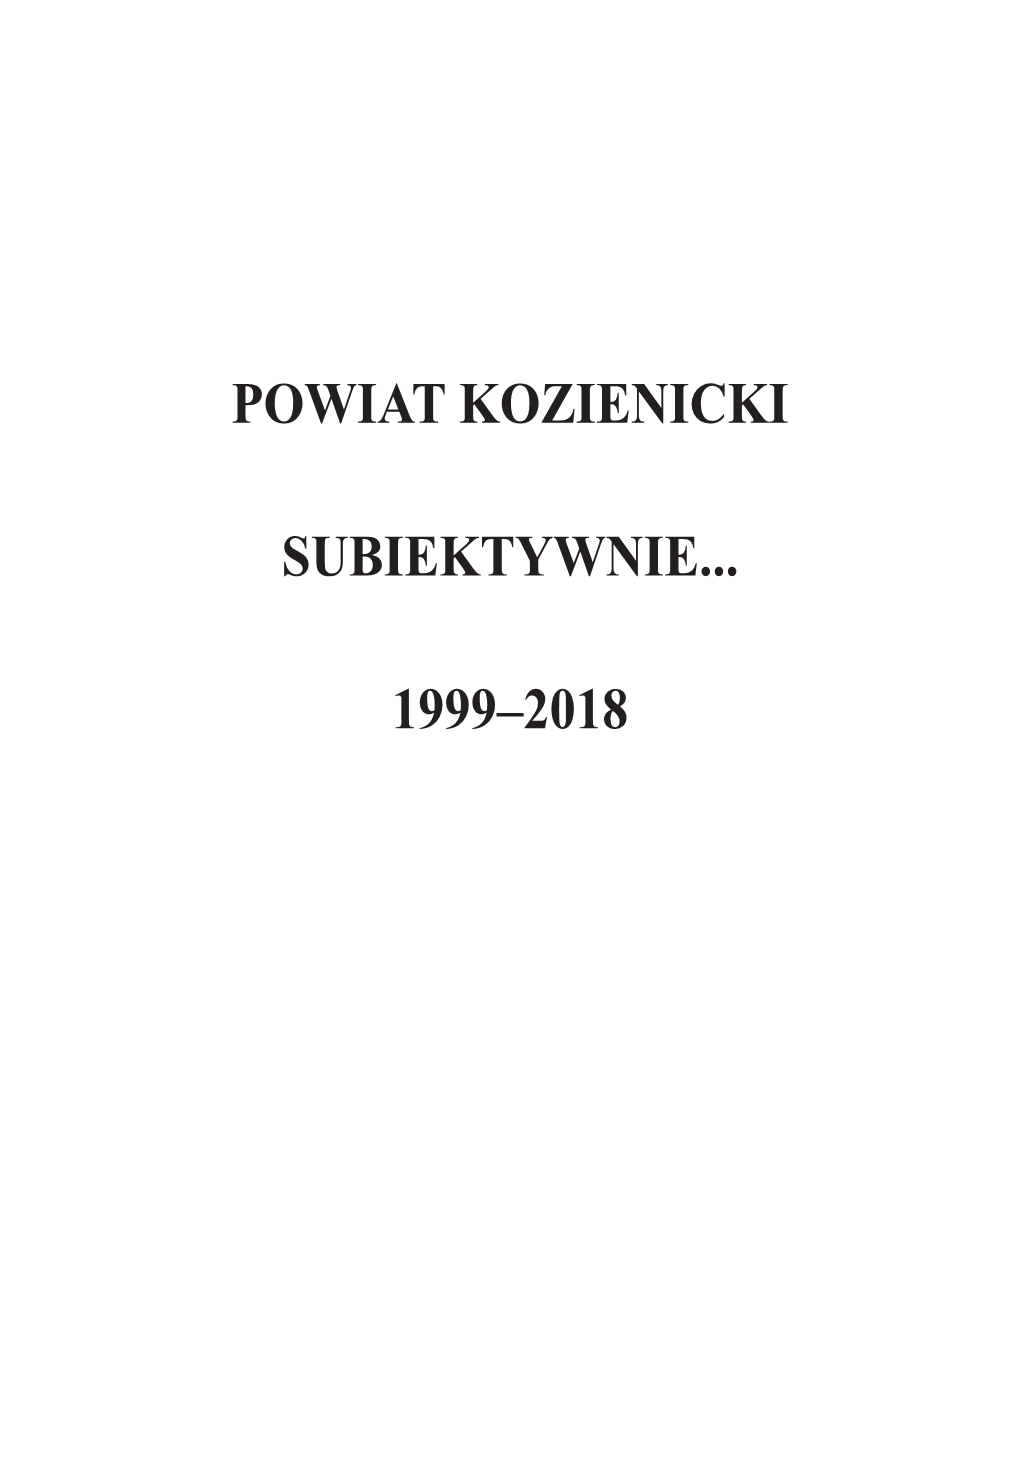 Powiat Kozienicki Subiektywnie... 1999–2018” Opracowana W Całości Przez Wydział Promocji I Kultury Starostwa Powiatowego W Kozienicach